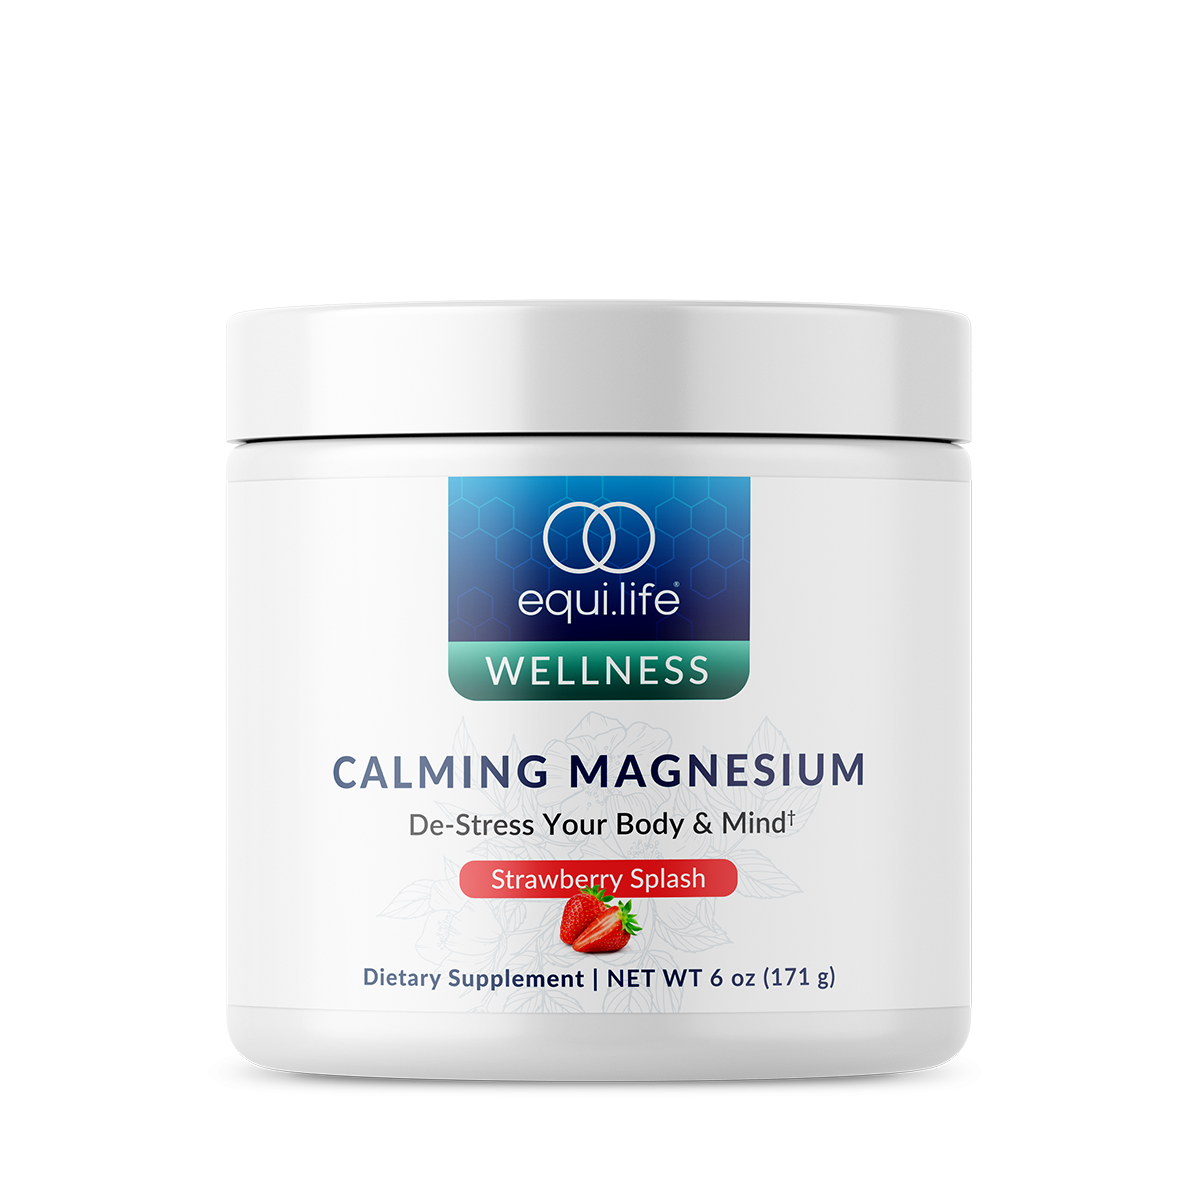 Calming Magnesium